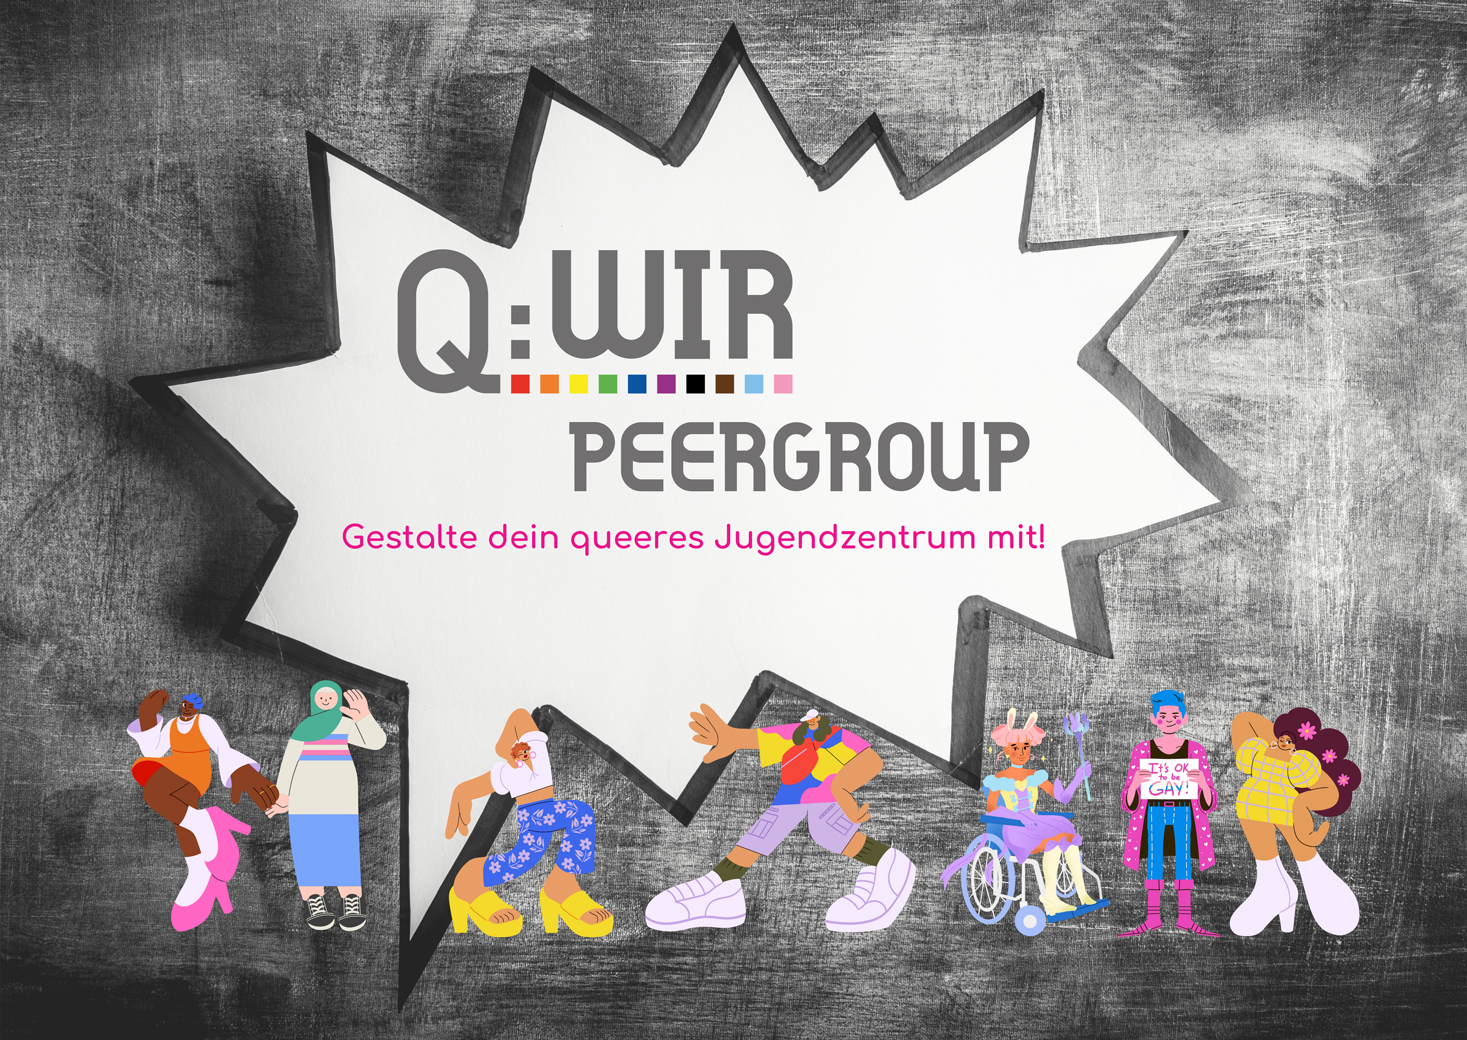 Flyer der Q:WIR-Peergroup mit dem Text "Gestalte dein queeres Jugendzentrum mit!".